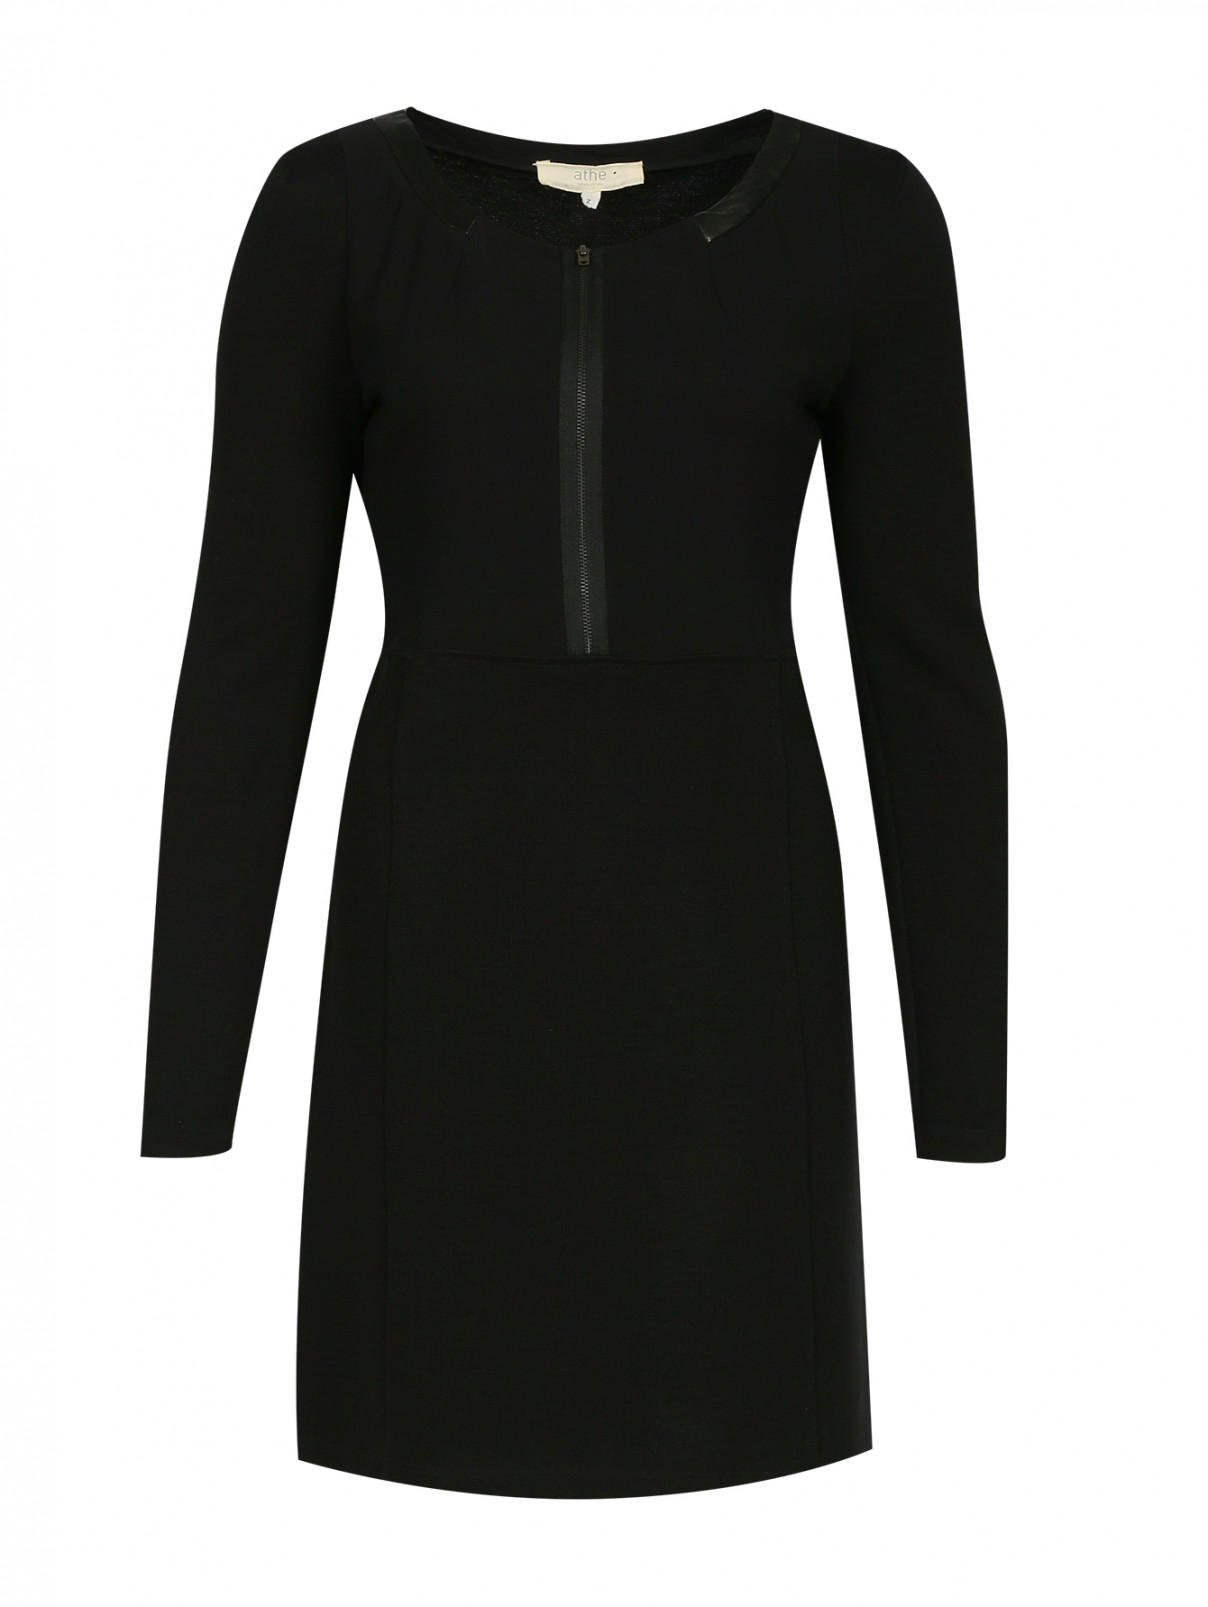 Трикотажное платье с молнией Athe Vanessa Bruno  –  Общий вид  – Цвет:  Черный